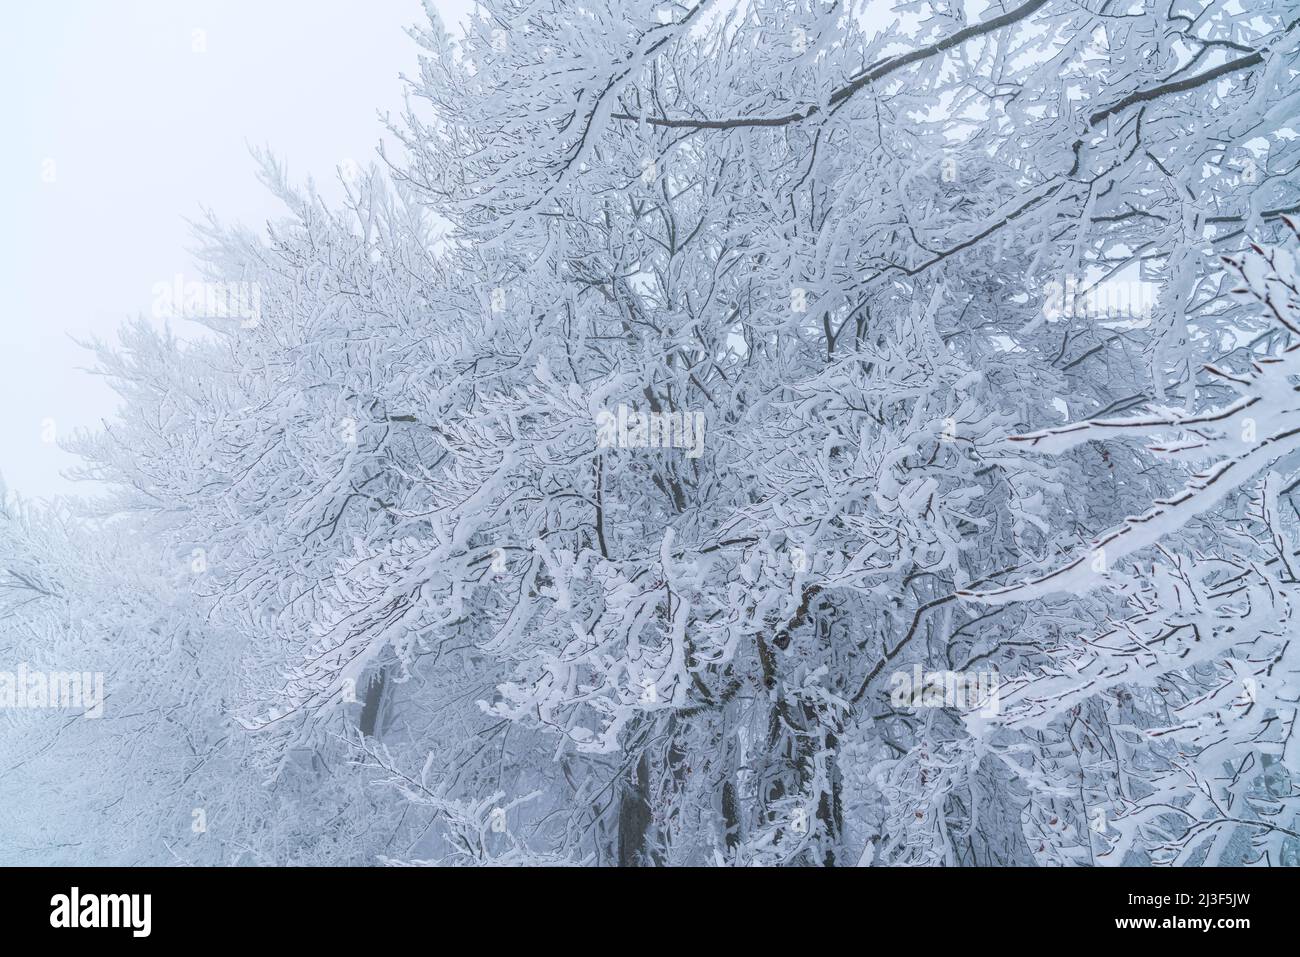 Alemania, hielo blanco helado y nieve cubriendo ramas de árboles en el borde del bosque en un día frío de invierno tormentoso, un hermoso país de las maravillas Foto de stock